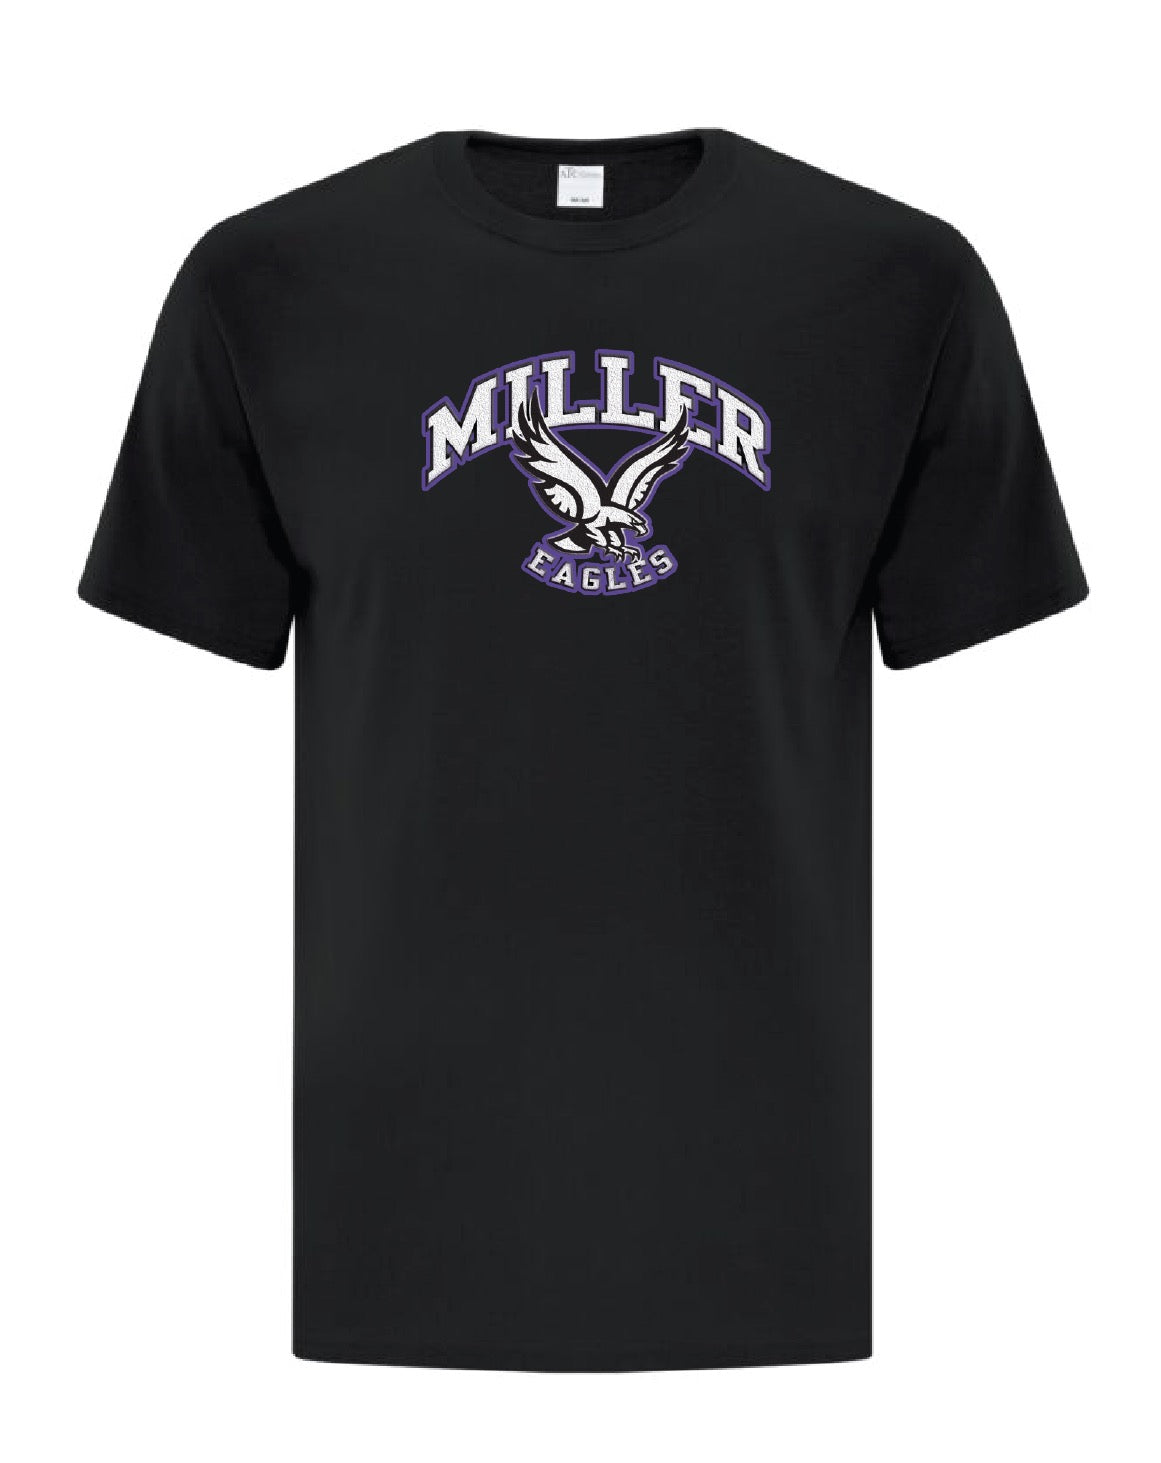 Adult "Miller Spirit Wear" T-shirt